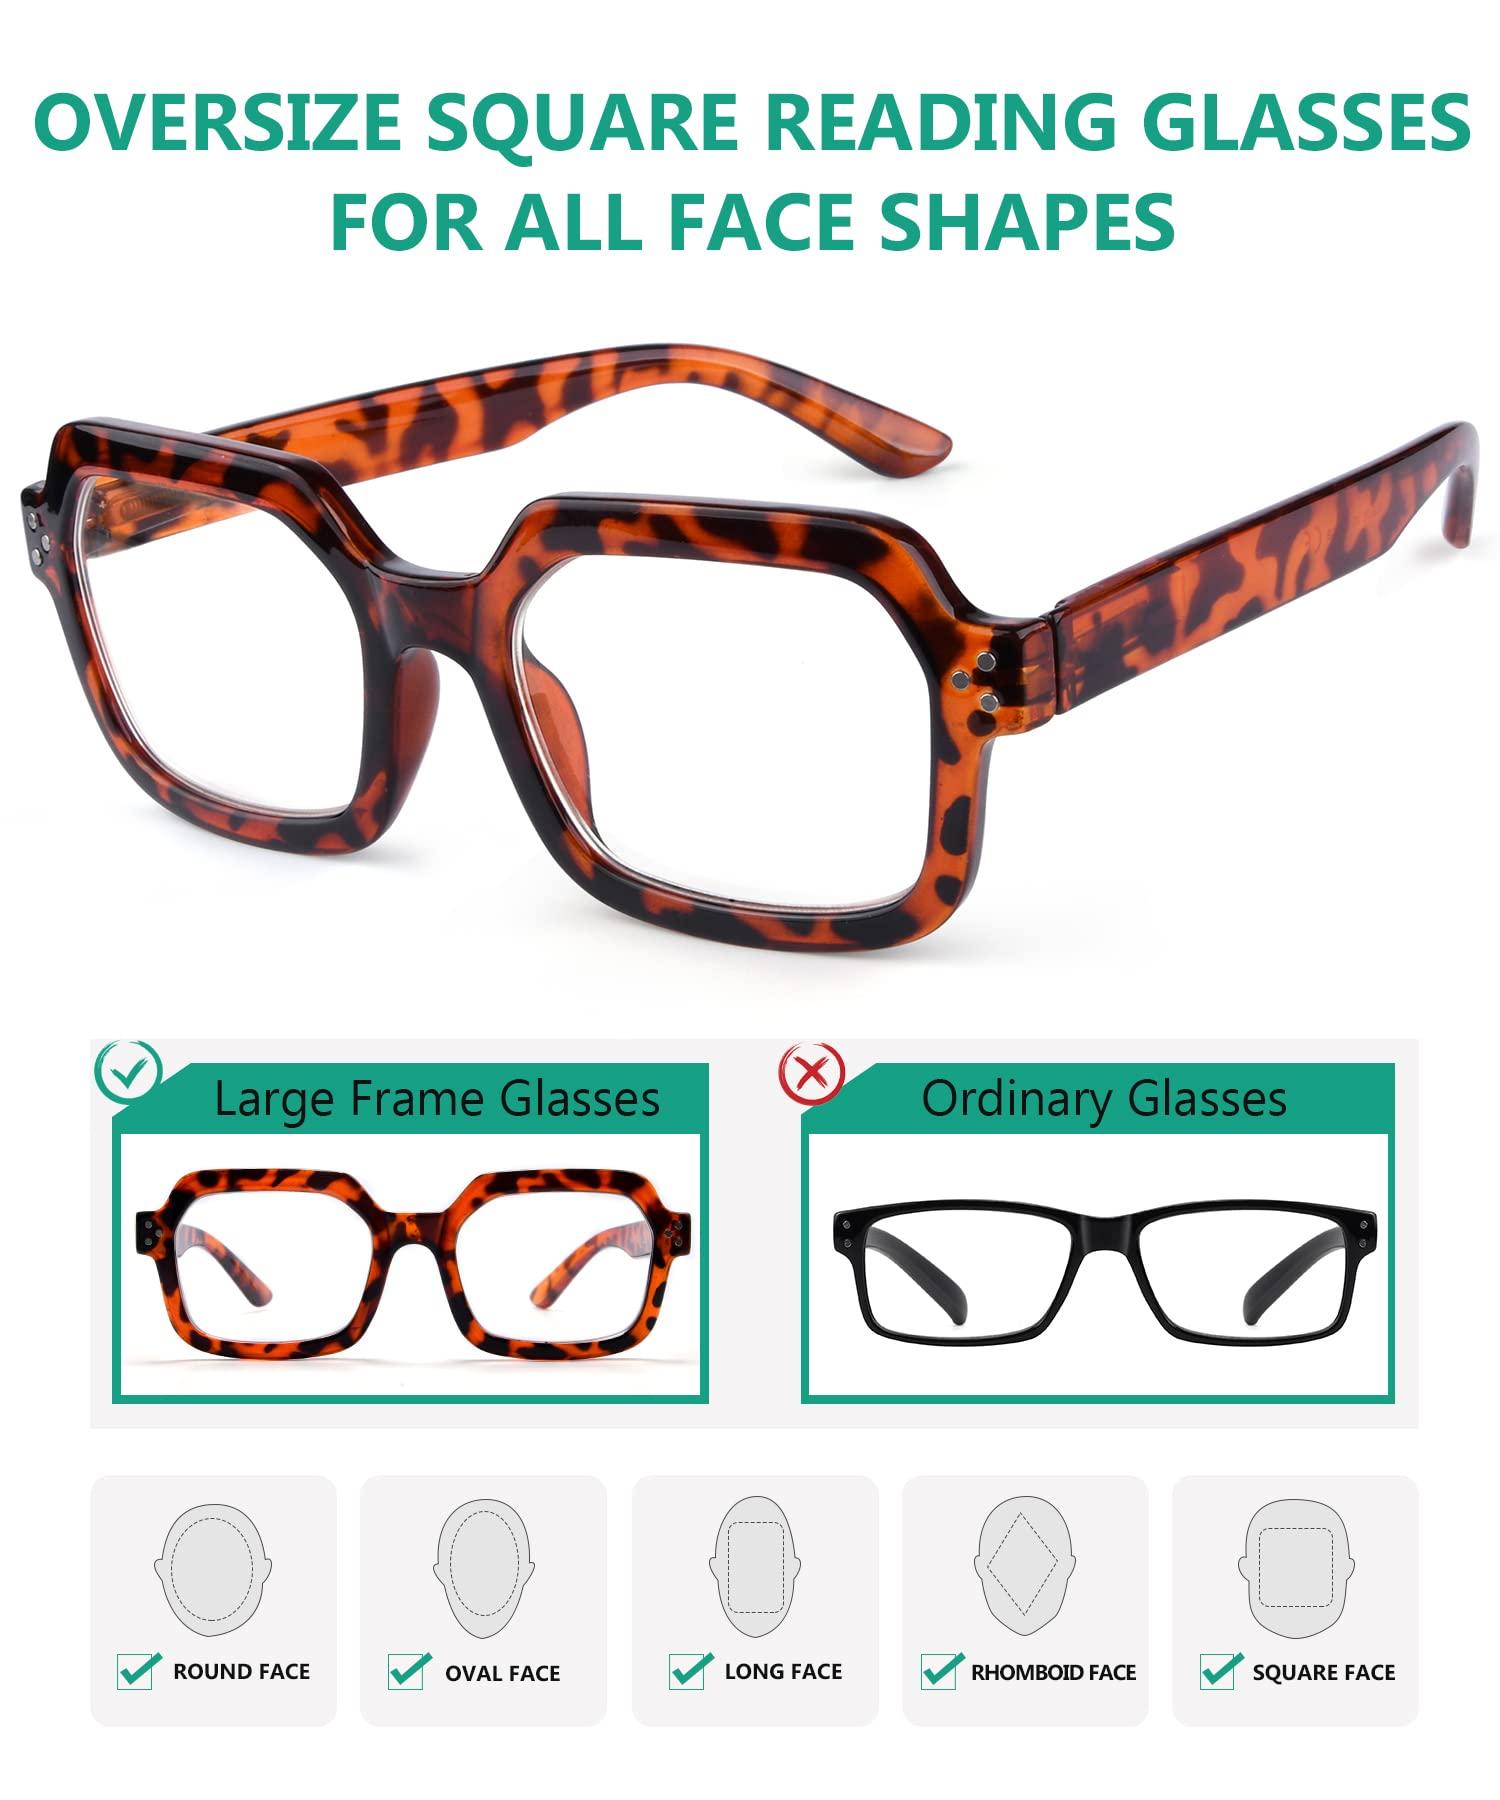 Eyekepper 5-pack Reading Glasses for Women Square Readers Large Frame +1.0 8